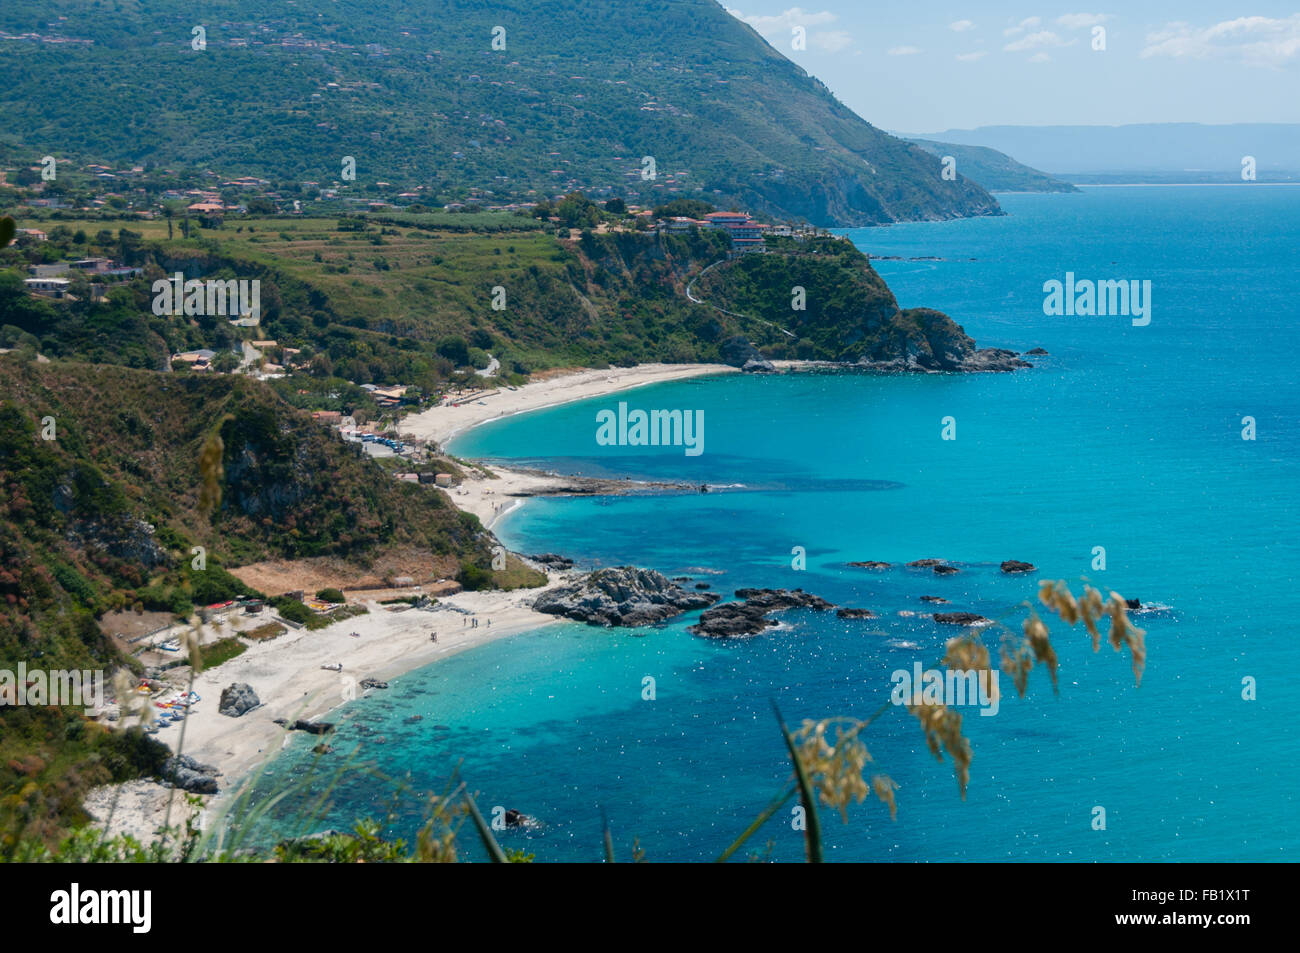 Ver más hermosas de la costa de Calabria, frente al azul mar mediterráneo Foto de stock